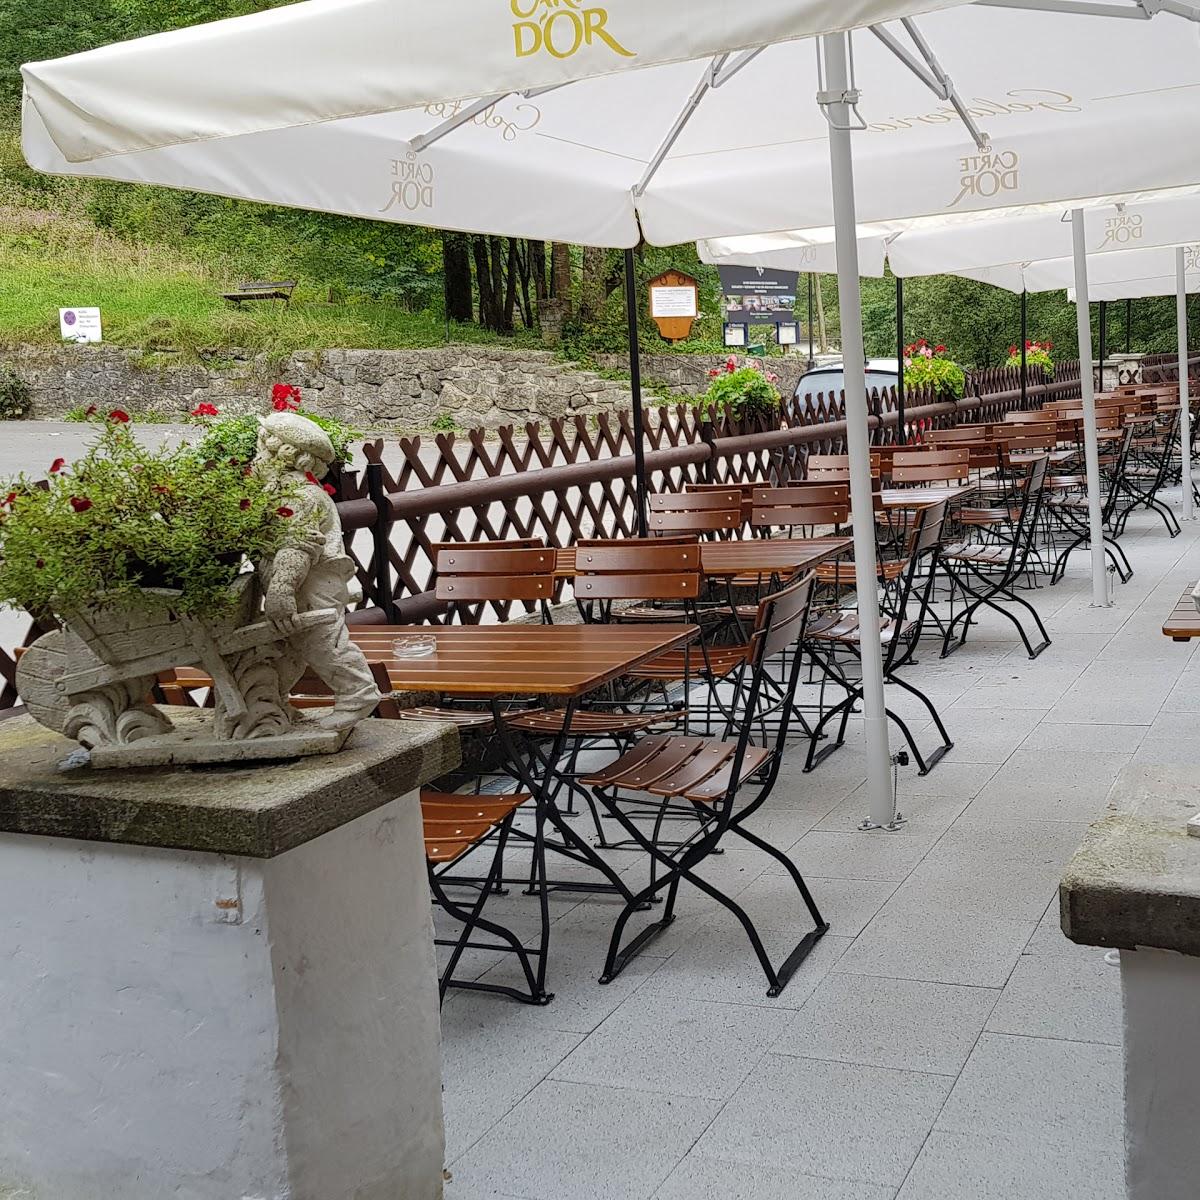 Restaurant "Klammhaus an der Partnach" in Garmisch-Partenkirchen